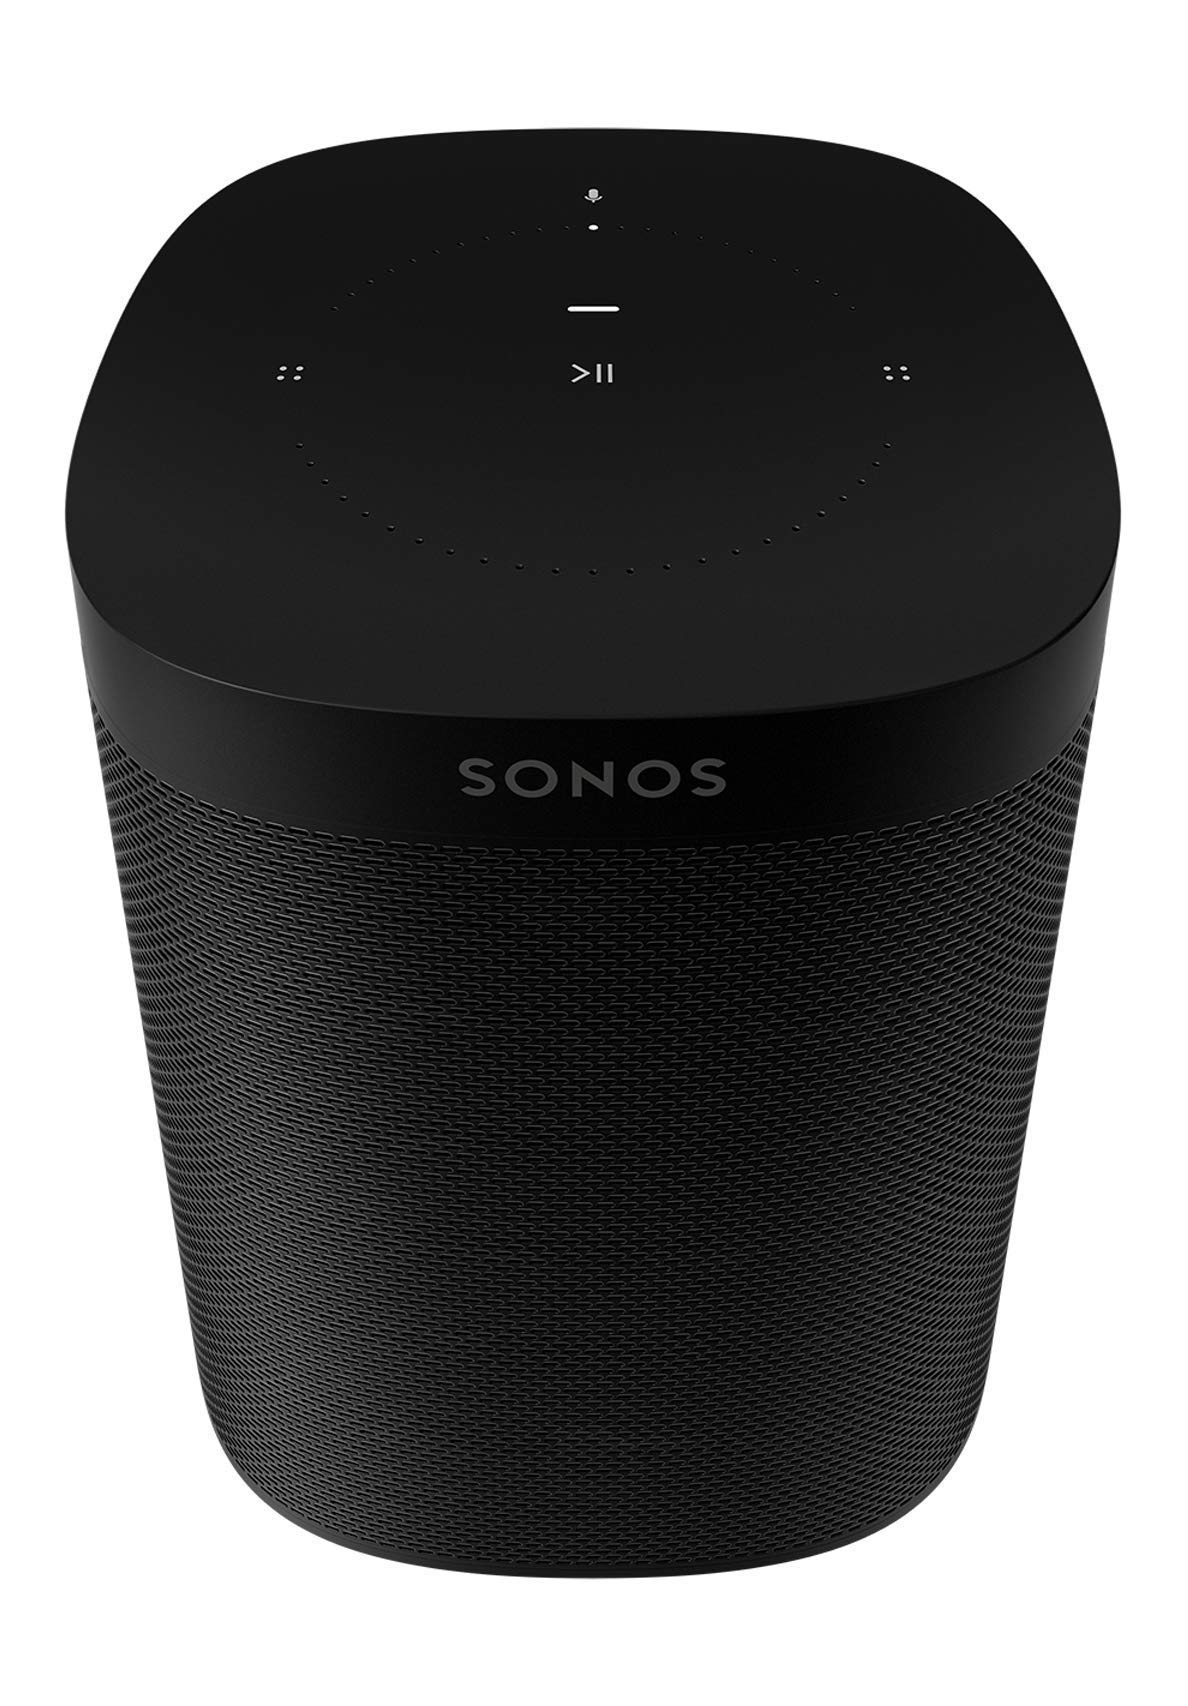 Sonos One Gen 2 (2019) vs Libratone Zipp 2 Slant